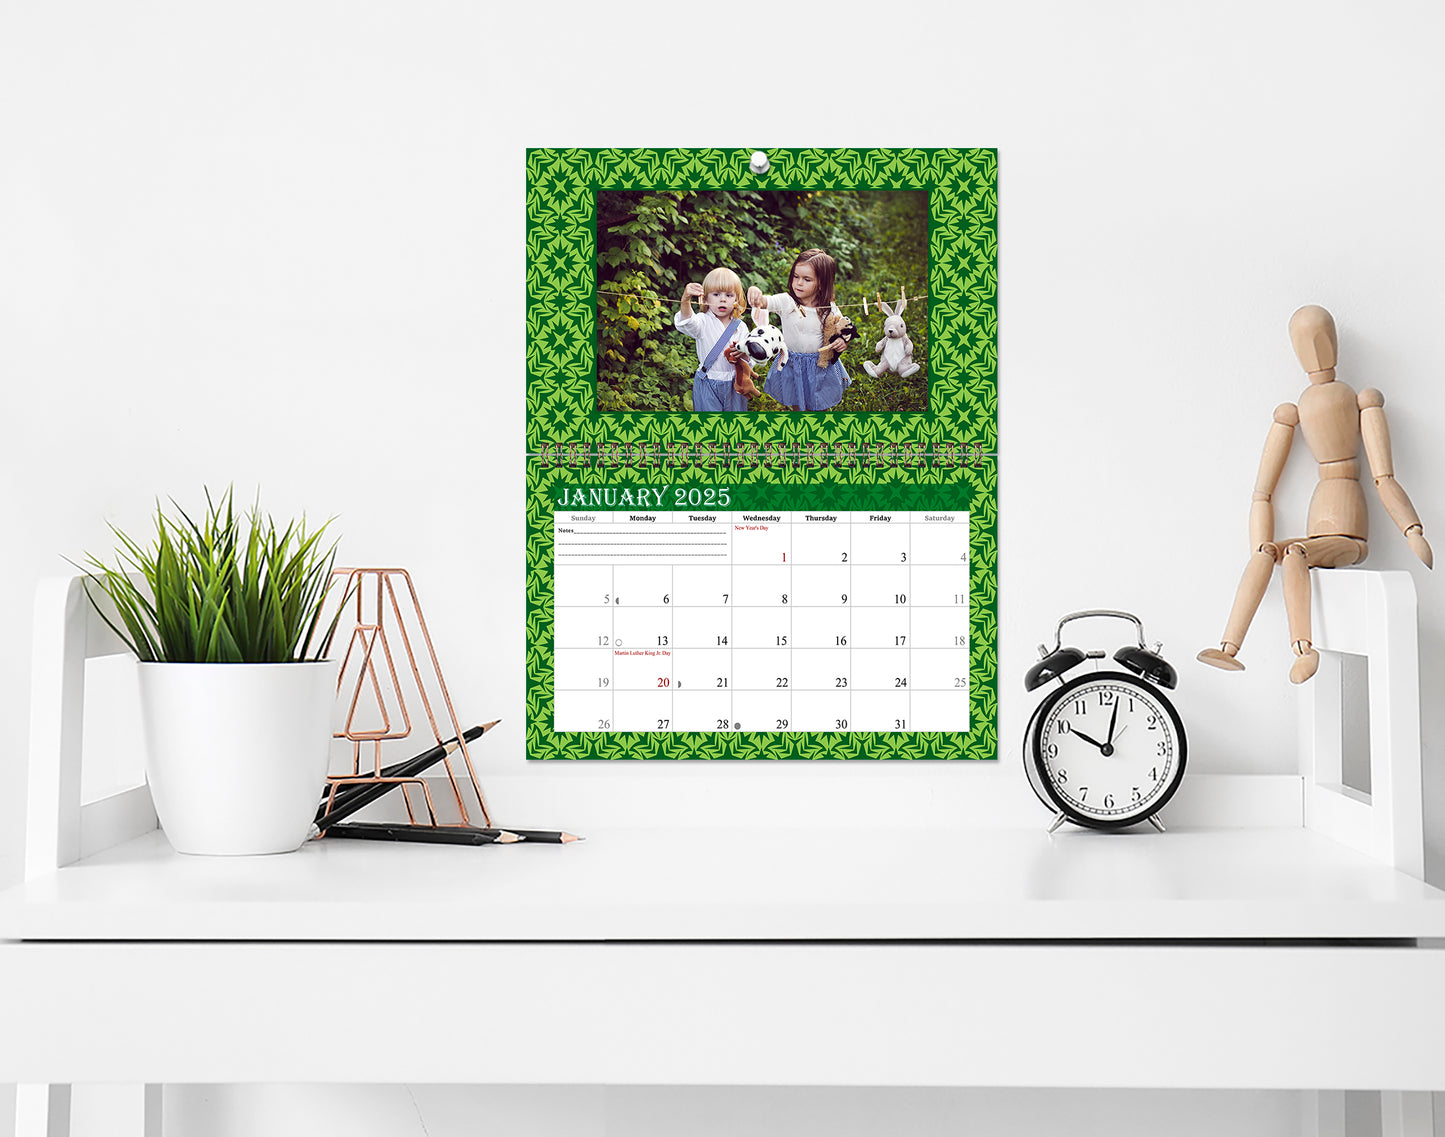 2025 Photo Frame Wall Spiral-bound Calendar (Add Your Own Photos) - 12 Months Desktop/Wall Calendar/Planner - (Edition #06)